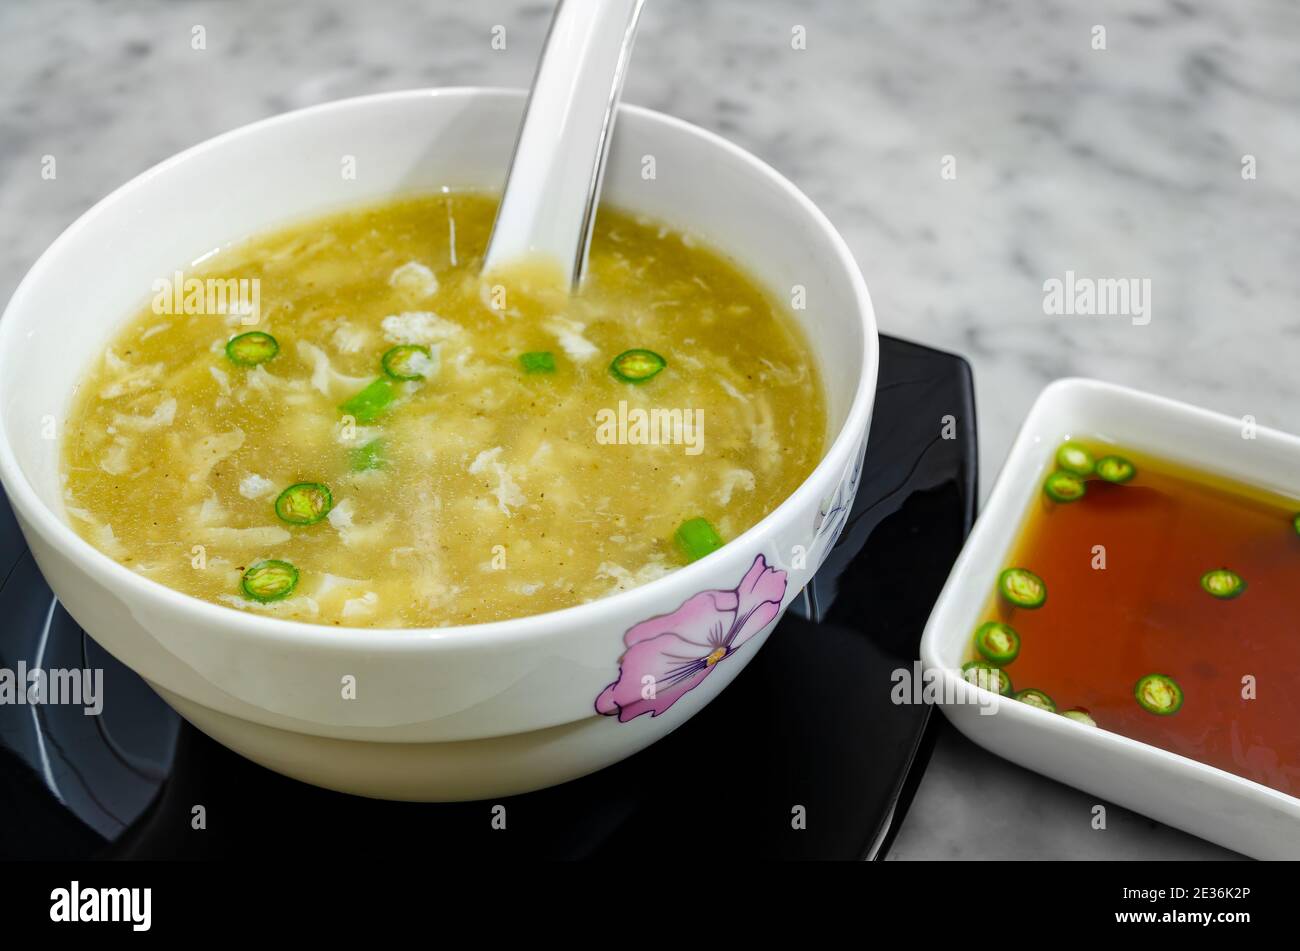 Zuppa di pollo calda in un recipiente insieme a una zuppa piccante salsa di chili da accompagnare Foto Stock